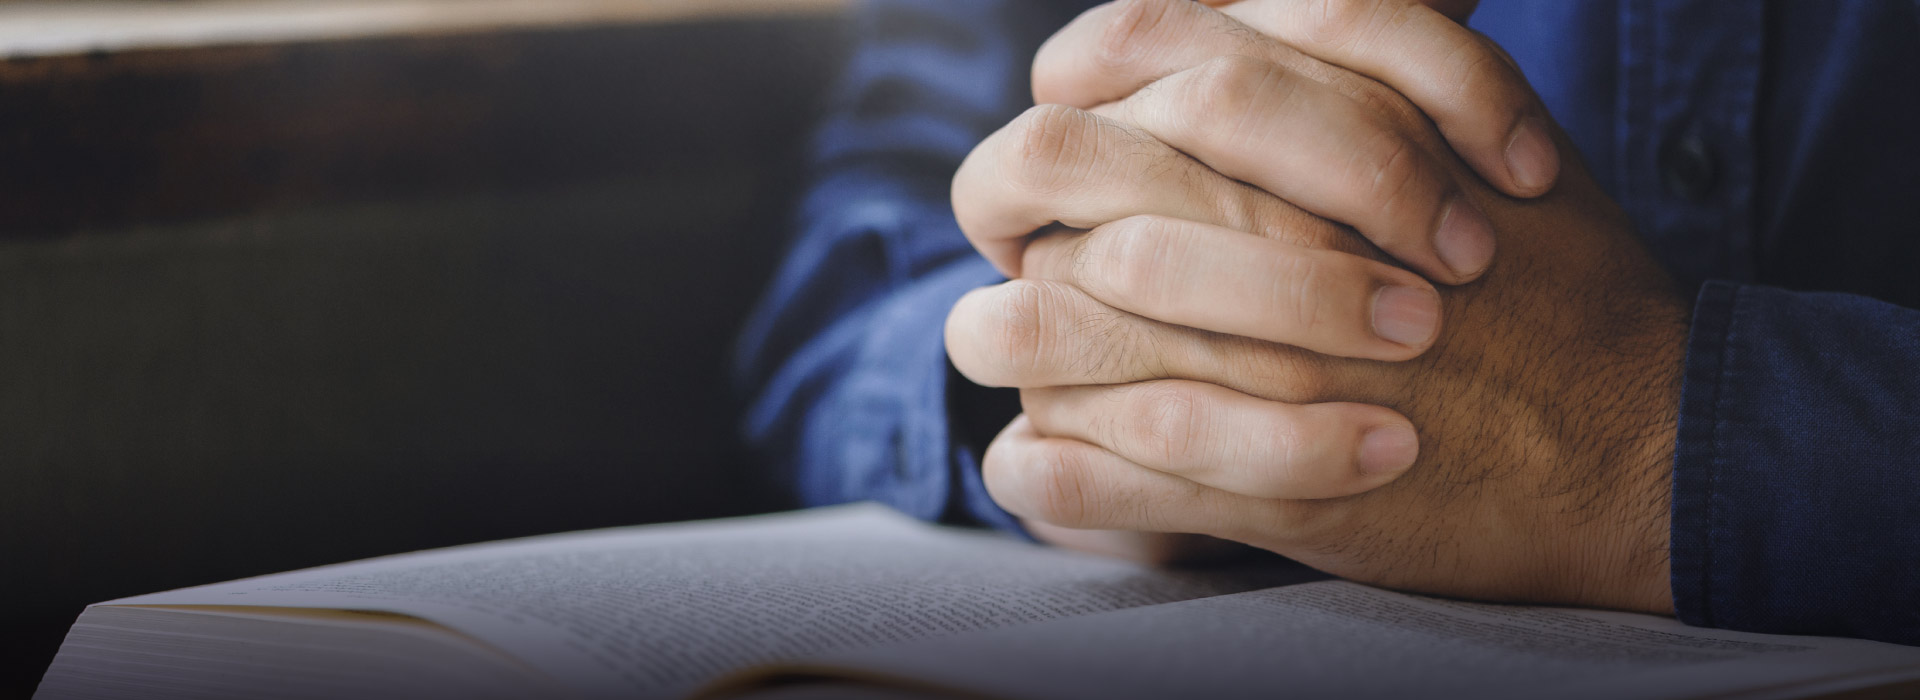 Imagem de pessoa rezando em cima de uma bíblia 